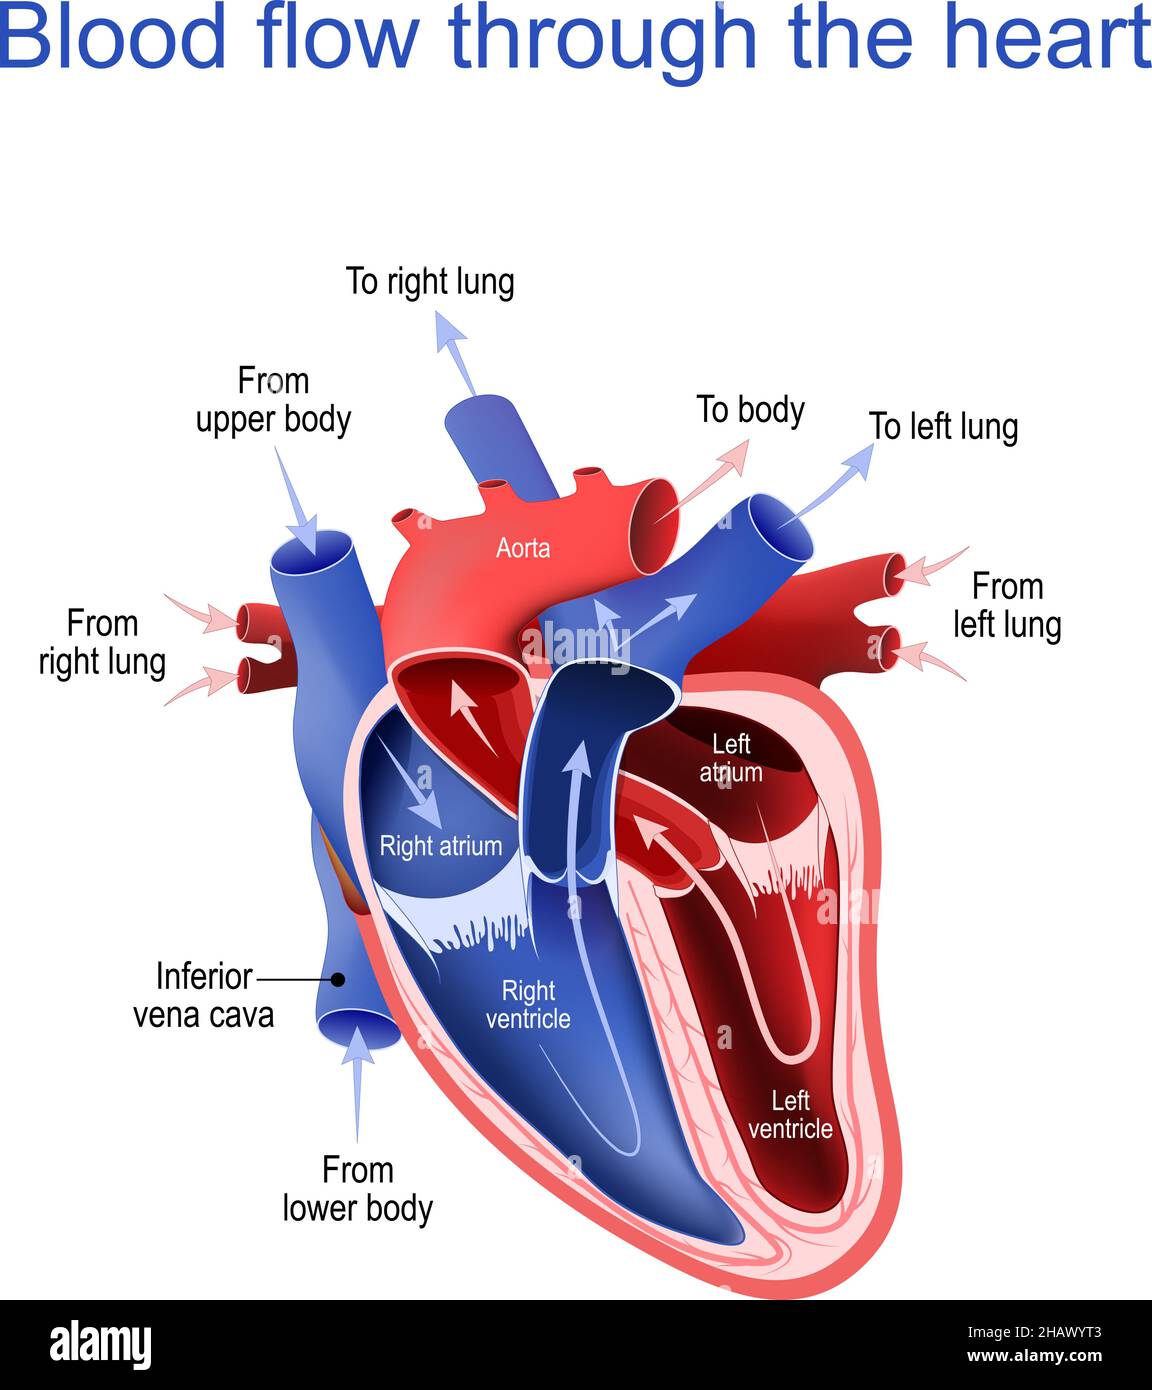 Blutkreislauf durch das Herz. Querschnitt des menschlichen Herzens. Die Pfeile zeigen die Richtung des Blutflusses. Hauptbestandteile des Herzens. Vektor Stock Vektor